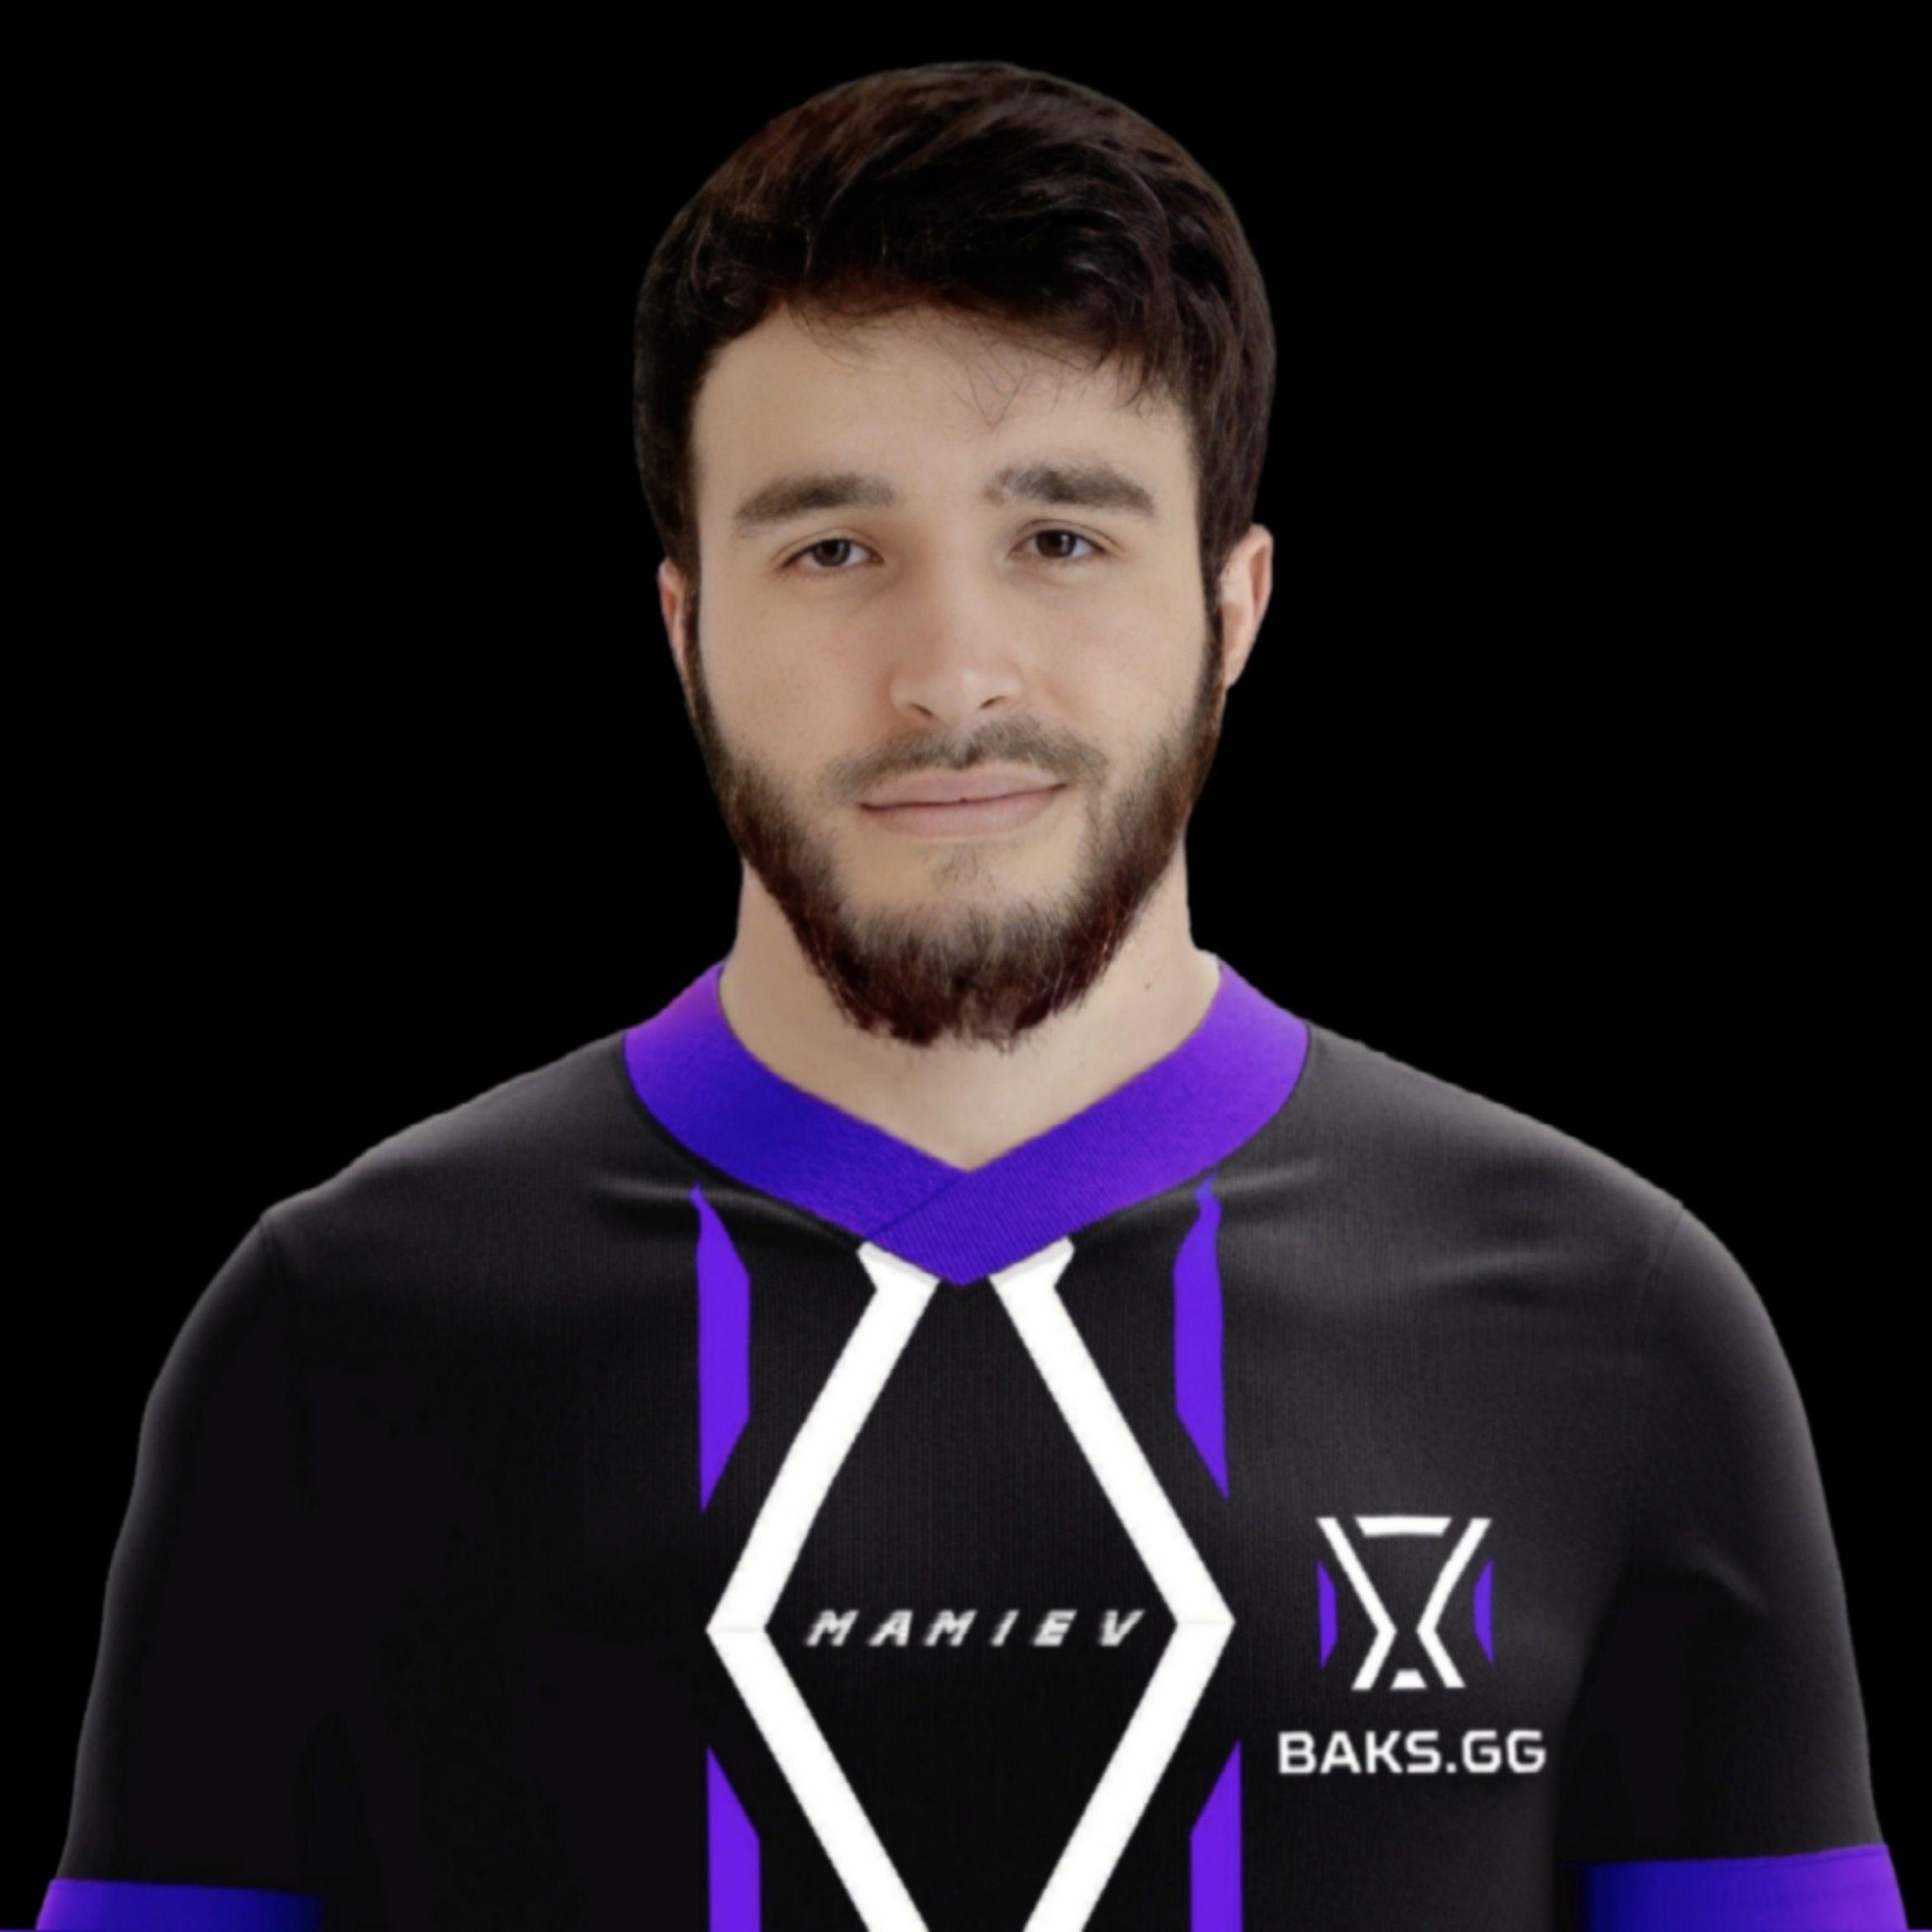 Player Mamiev avatar